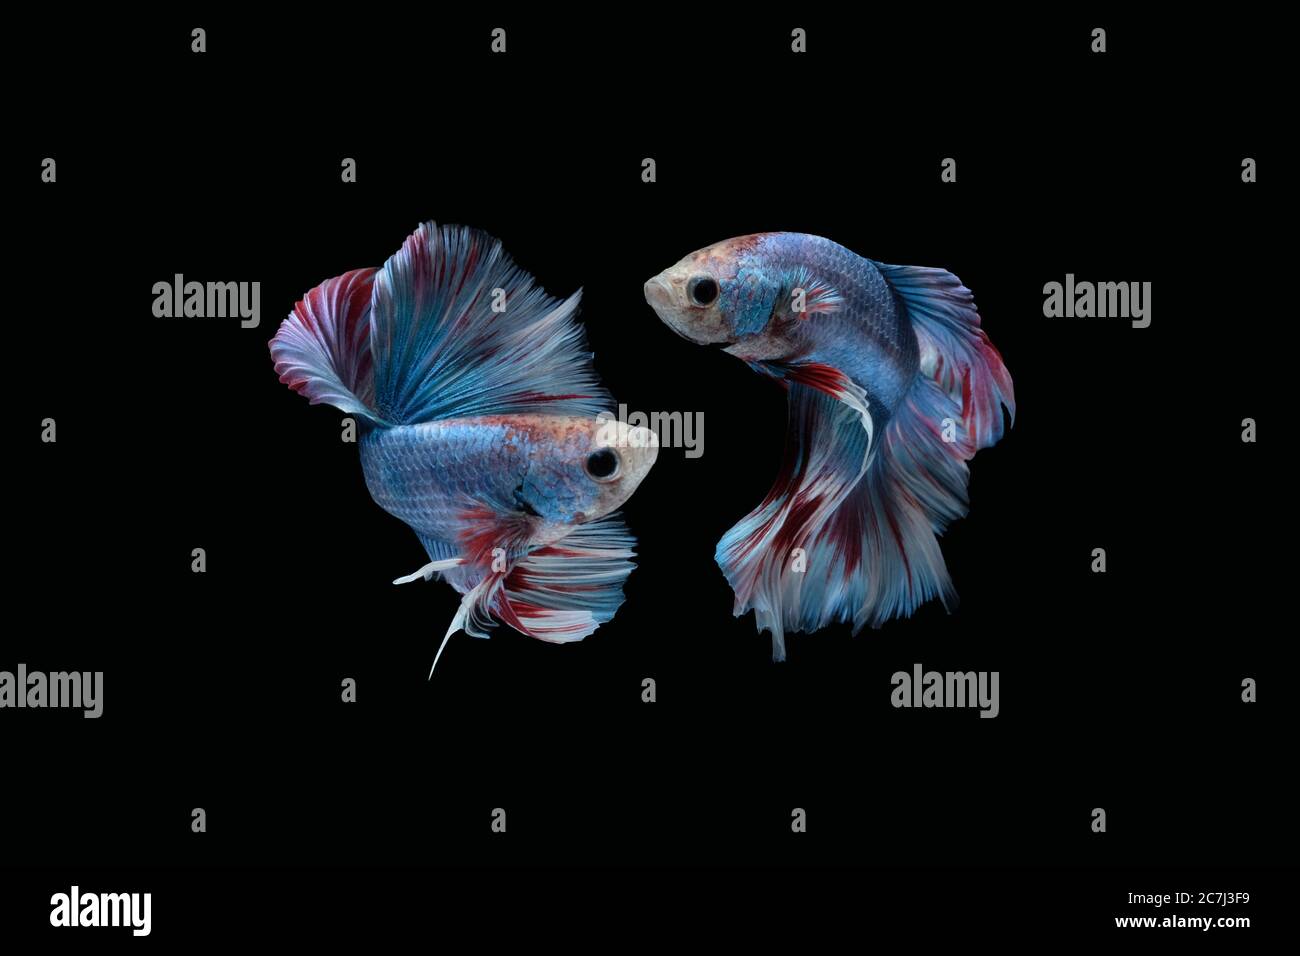 Due danze marmo blu grizzle mezzaluna betta pesce siamese isolato su sfondo nero Foto Stock